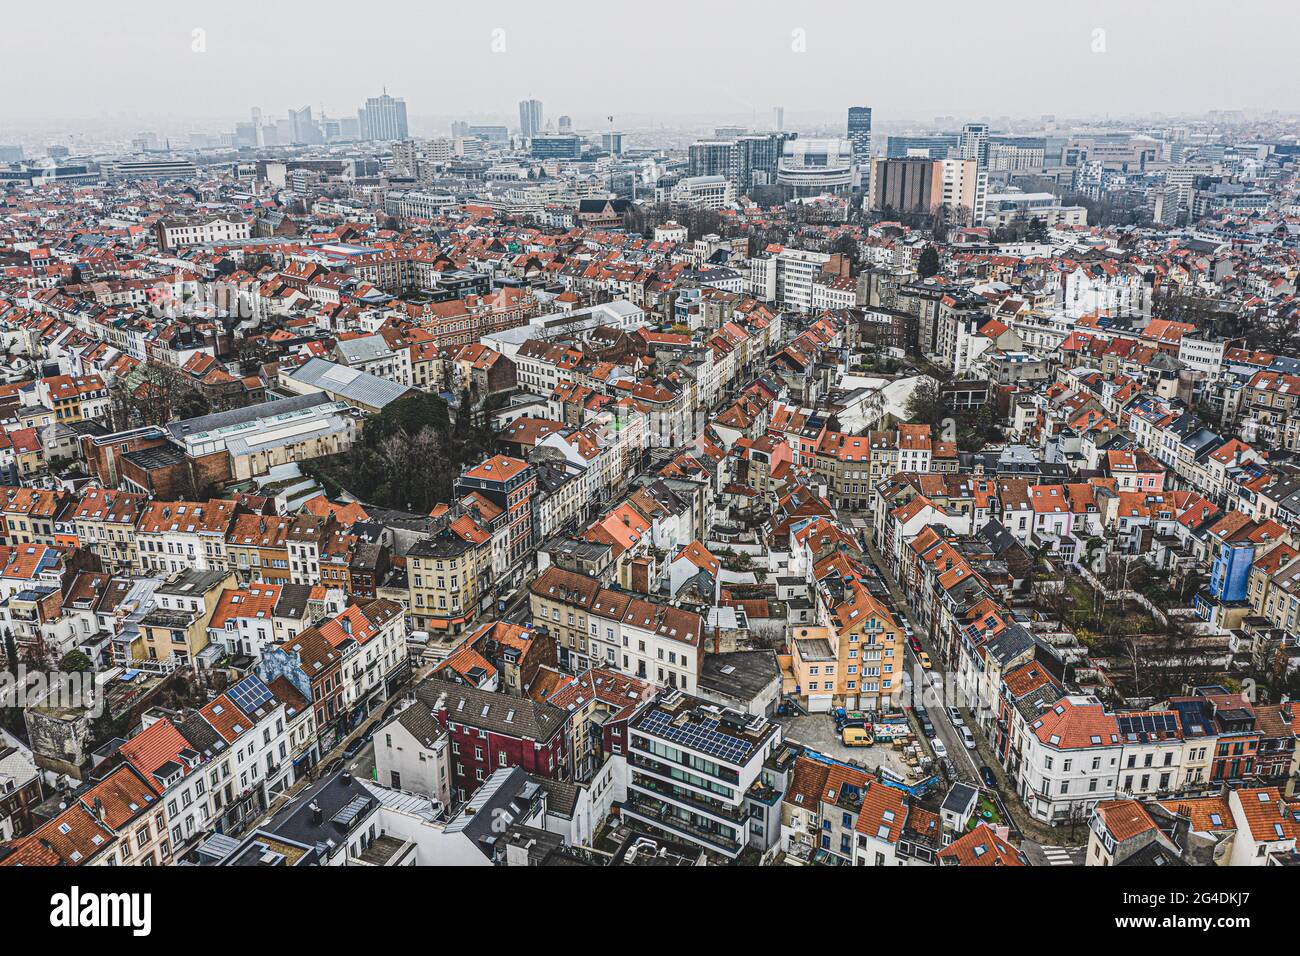 Brüssel, Belgien, 3. Januar 2021: Blick von oben auf die Altstadt von Brüssel. Europäische kommission baut auf dem Hintergrund auf Stockfoto